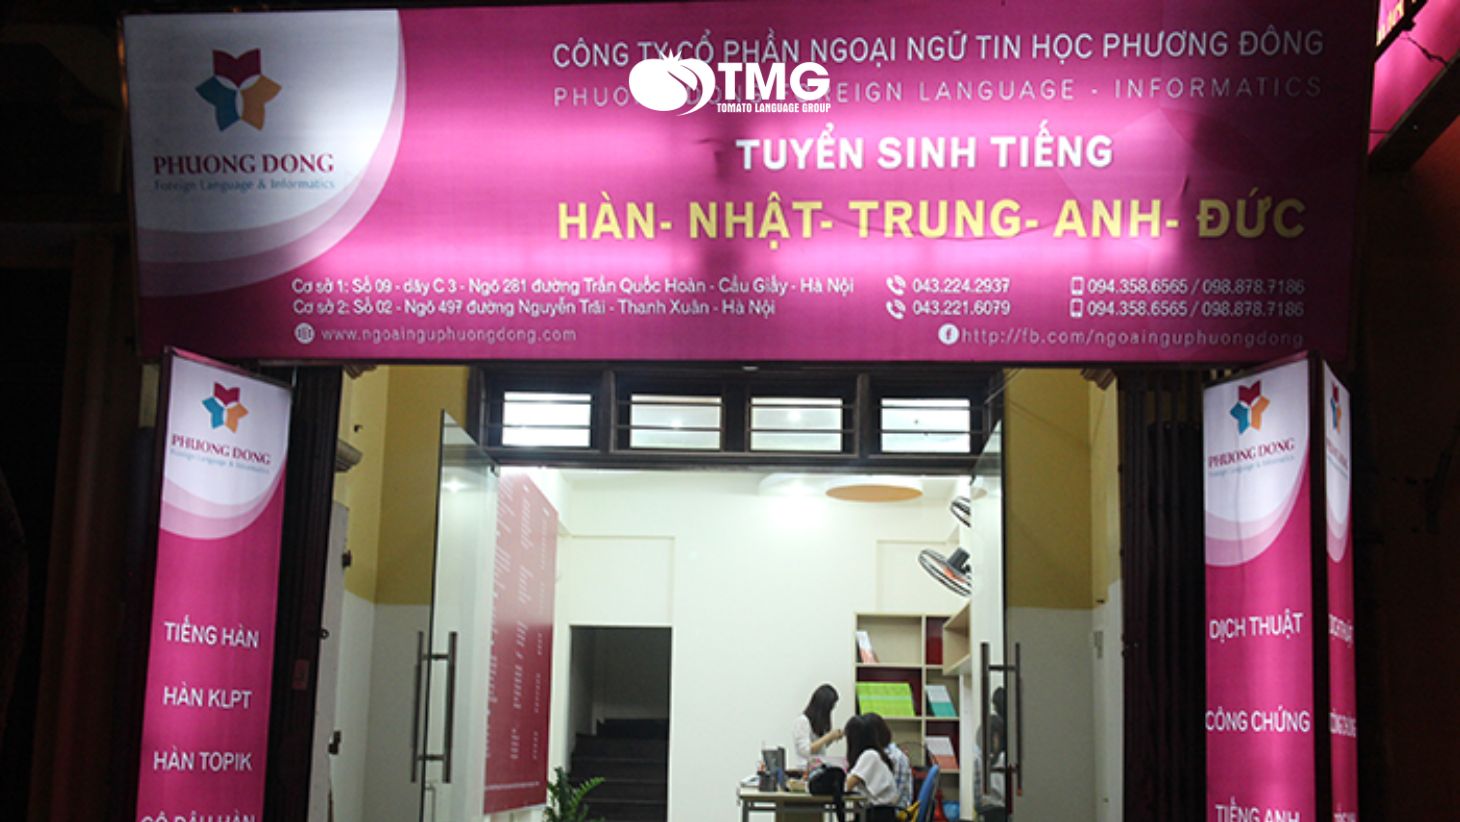 7 trung tâm dạy tiếng Hàn tại Hà Nội uy tín nhất - Ảnh 3